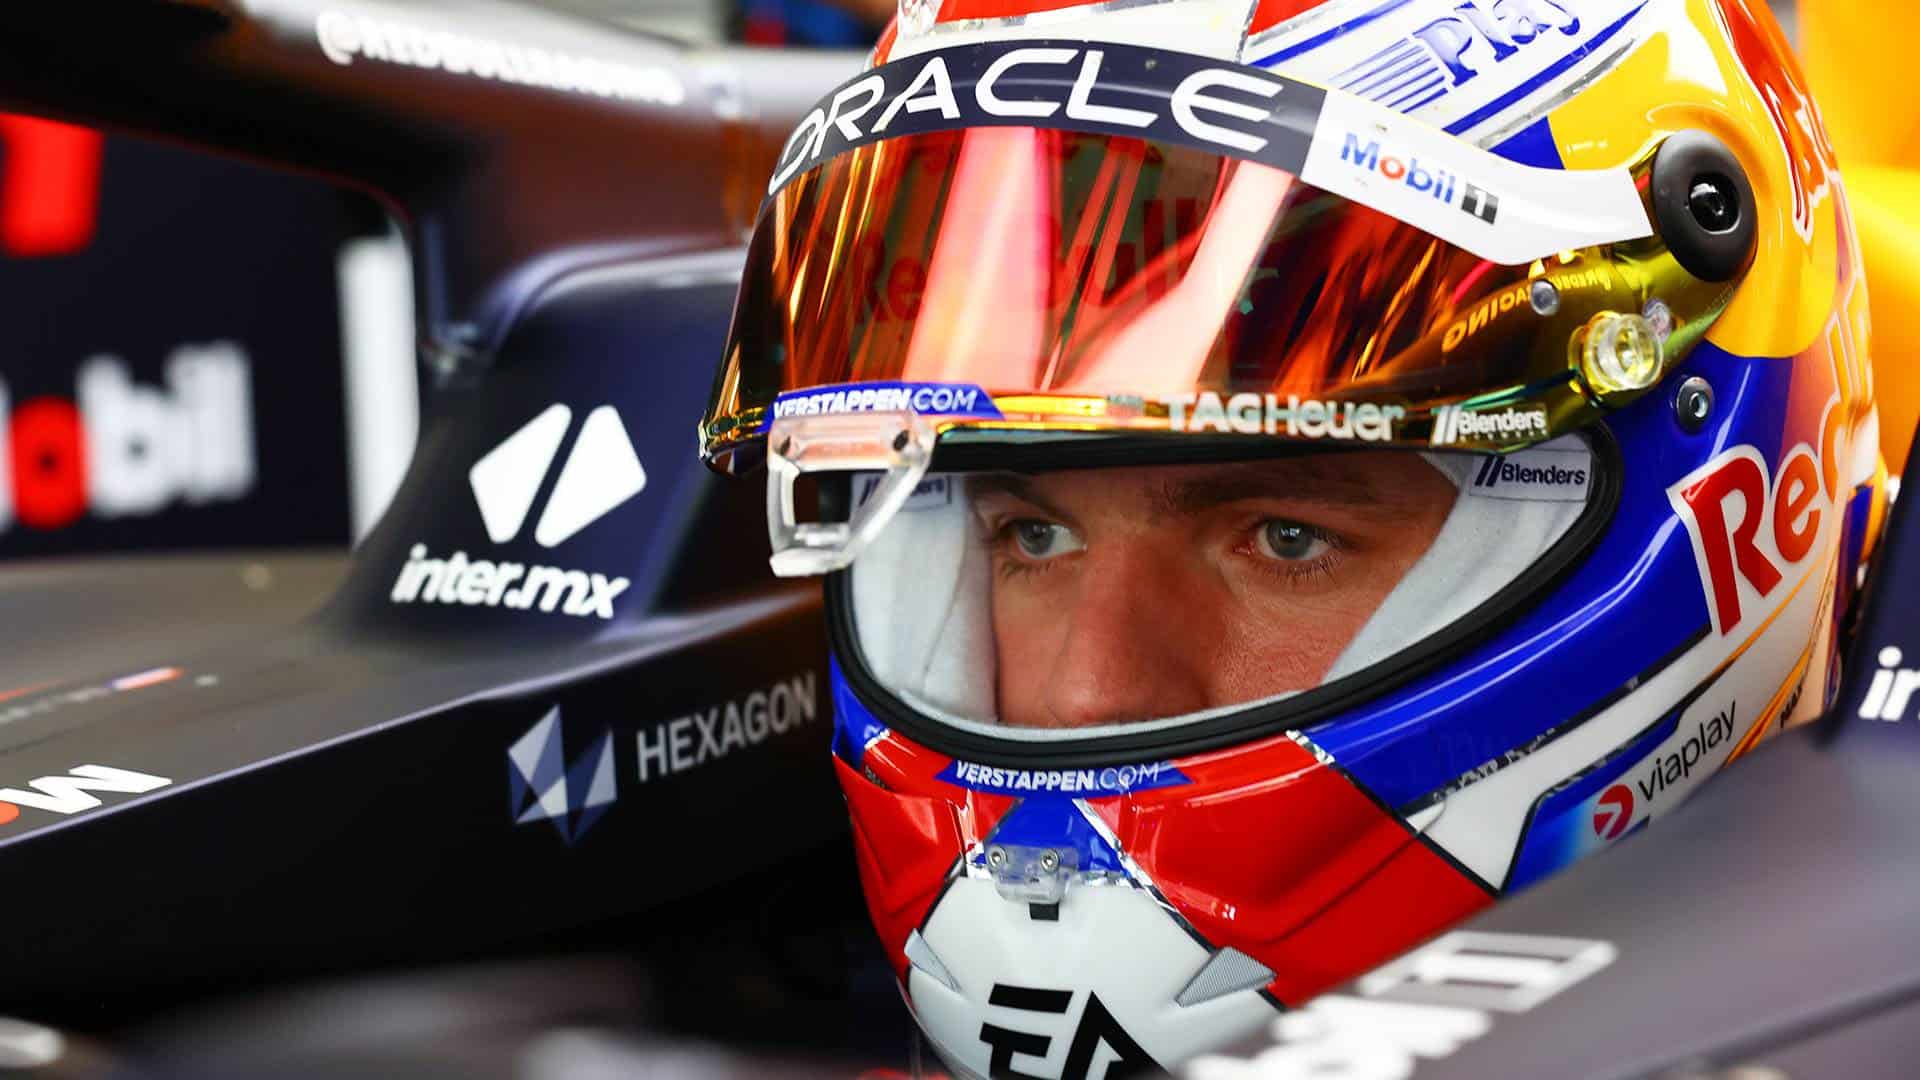 Todo sigue igual, Verstappen y Red Bull marcan el ritmo